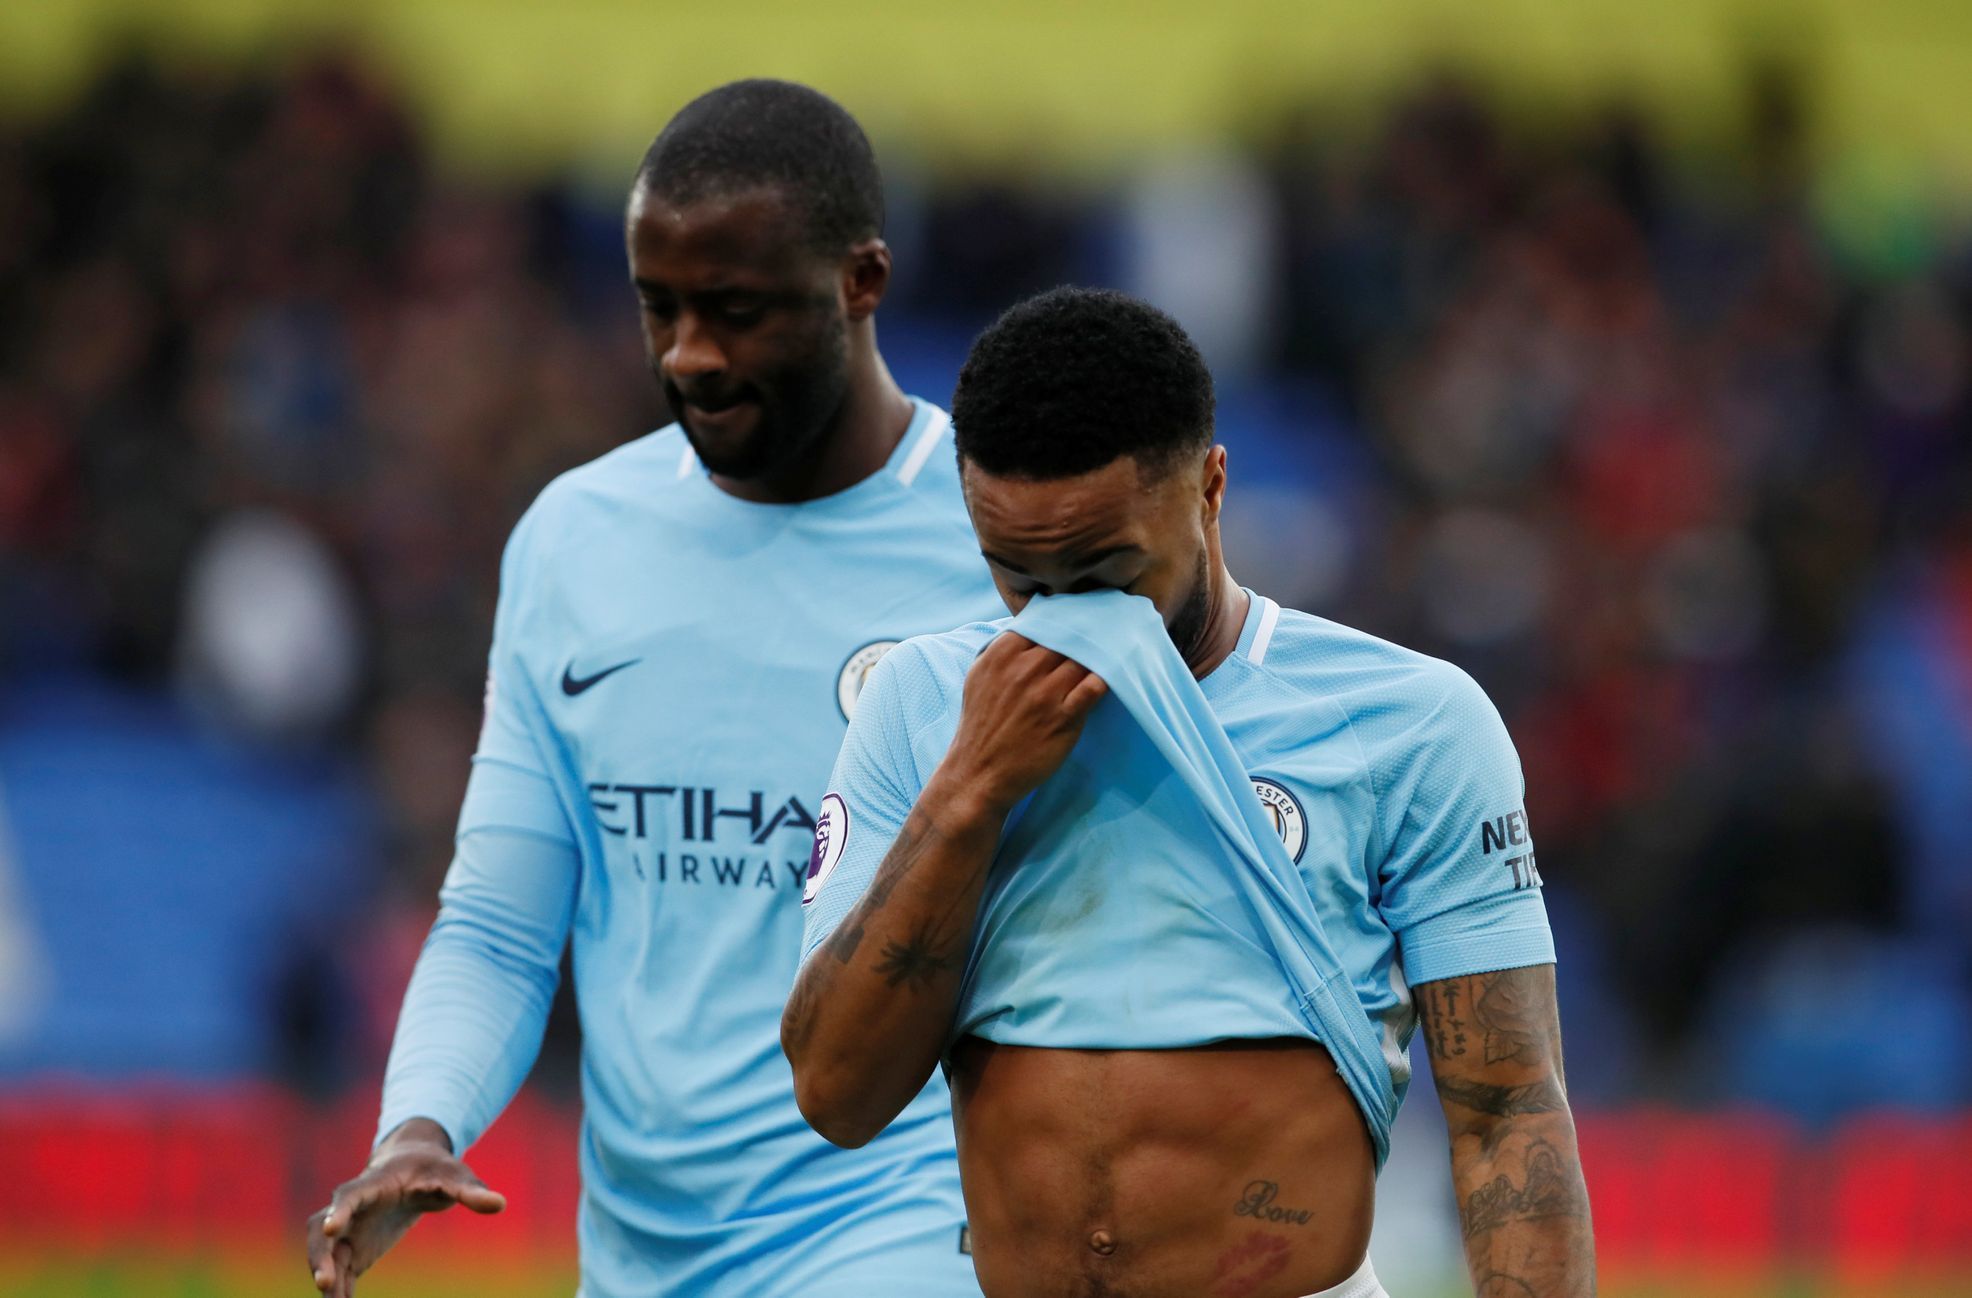 Raheem Sterling (v popředí) a Yaya Touré odcházejí zklamaně z trávníku poté, co jejich Manchester City nedokázal porazit Crystal Palace